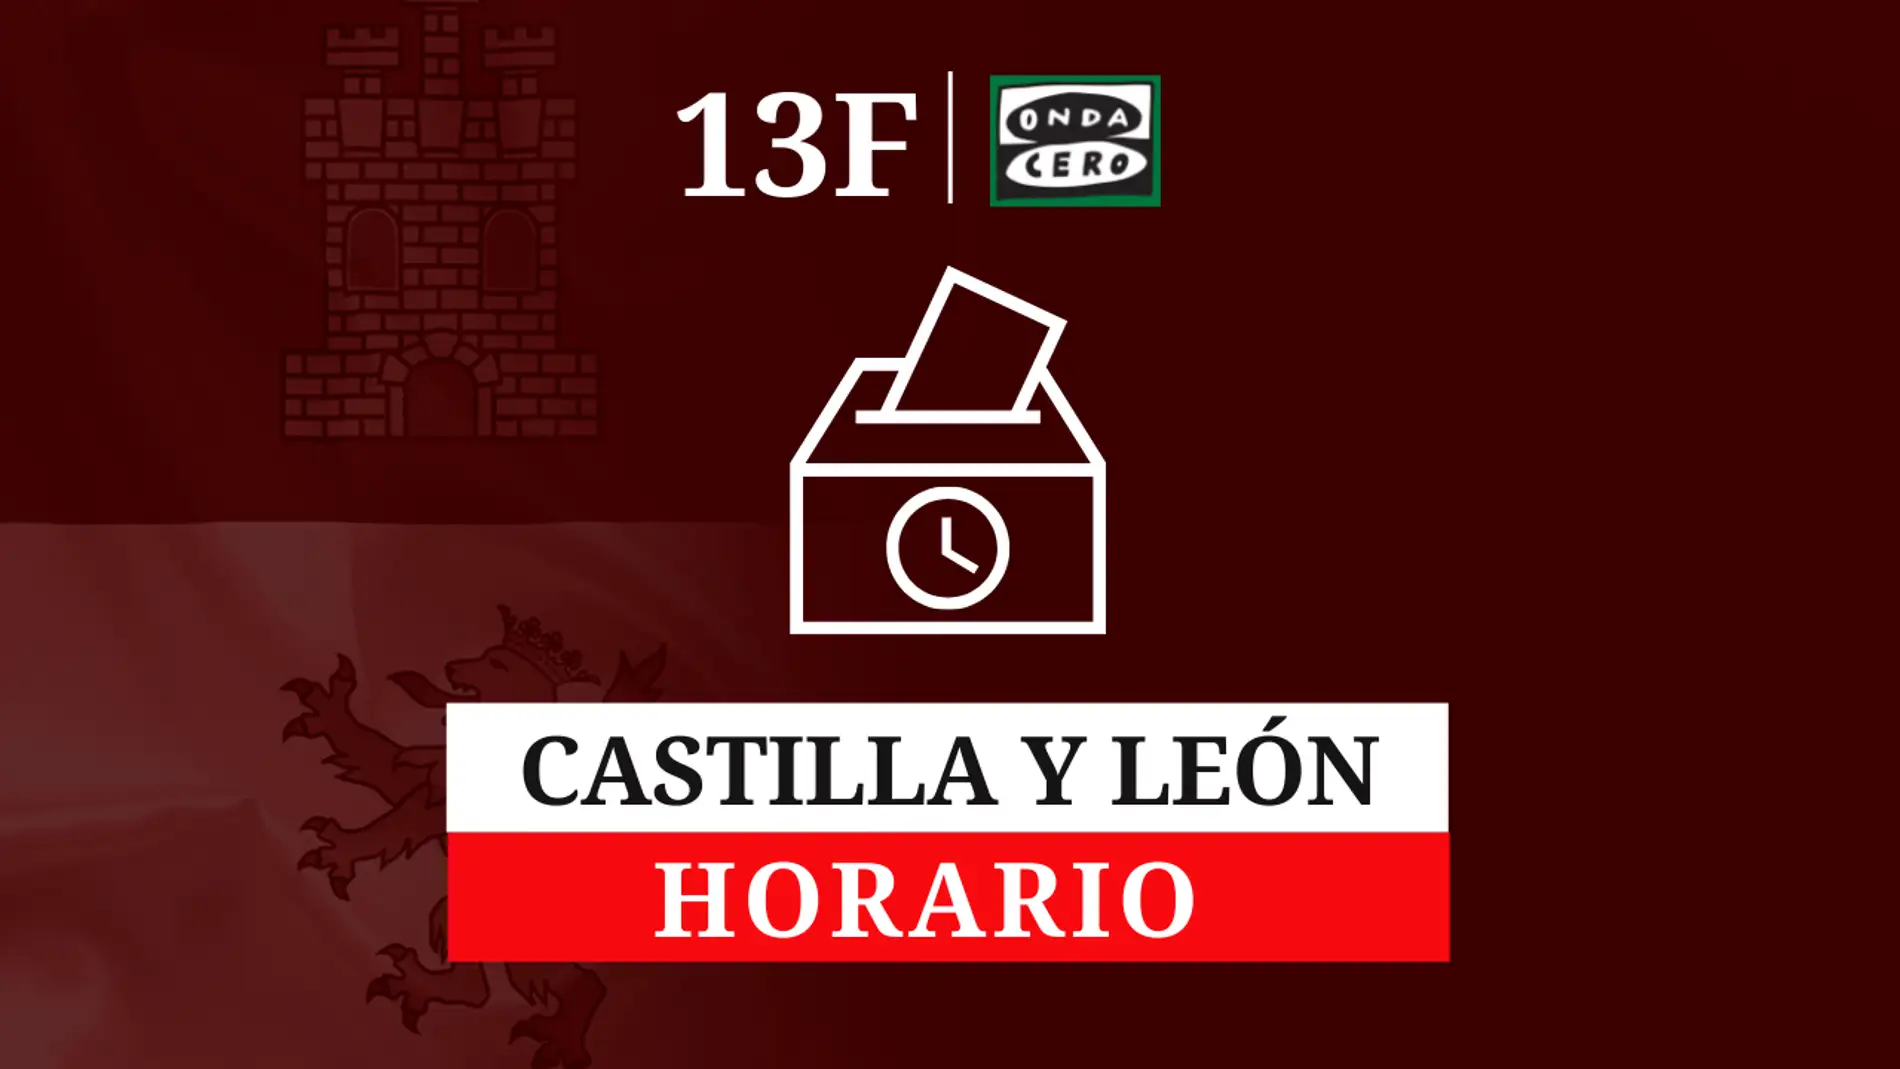 Horario de las elecciones en Castilla y León